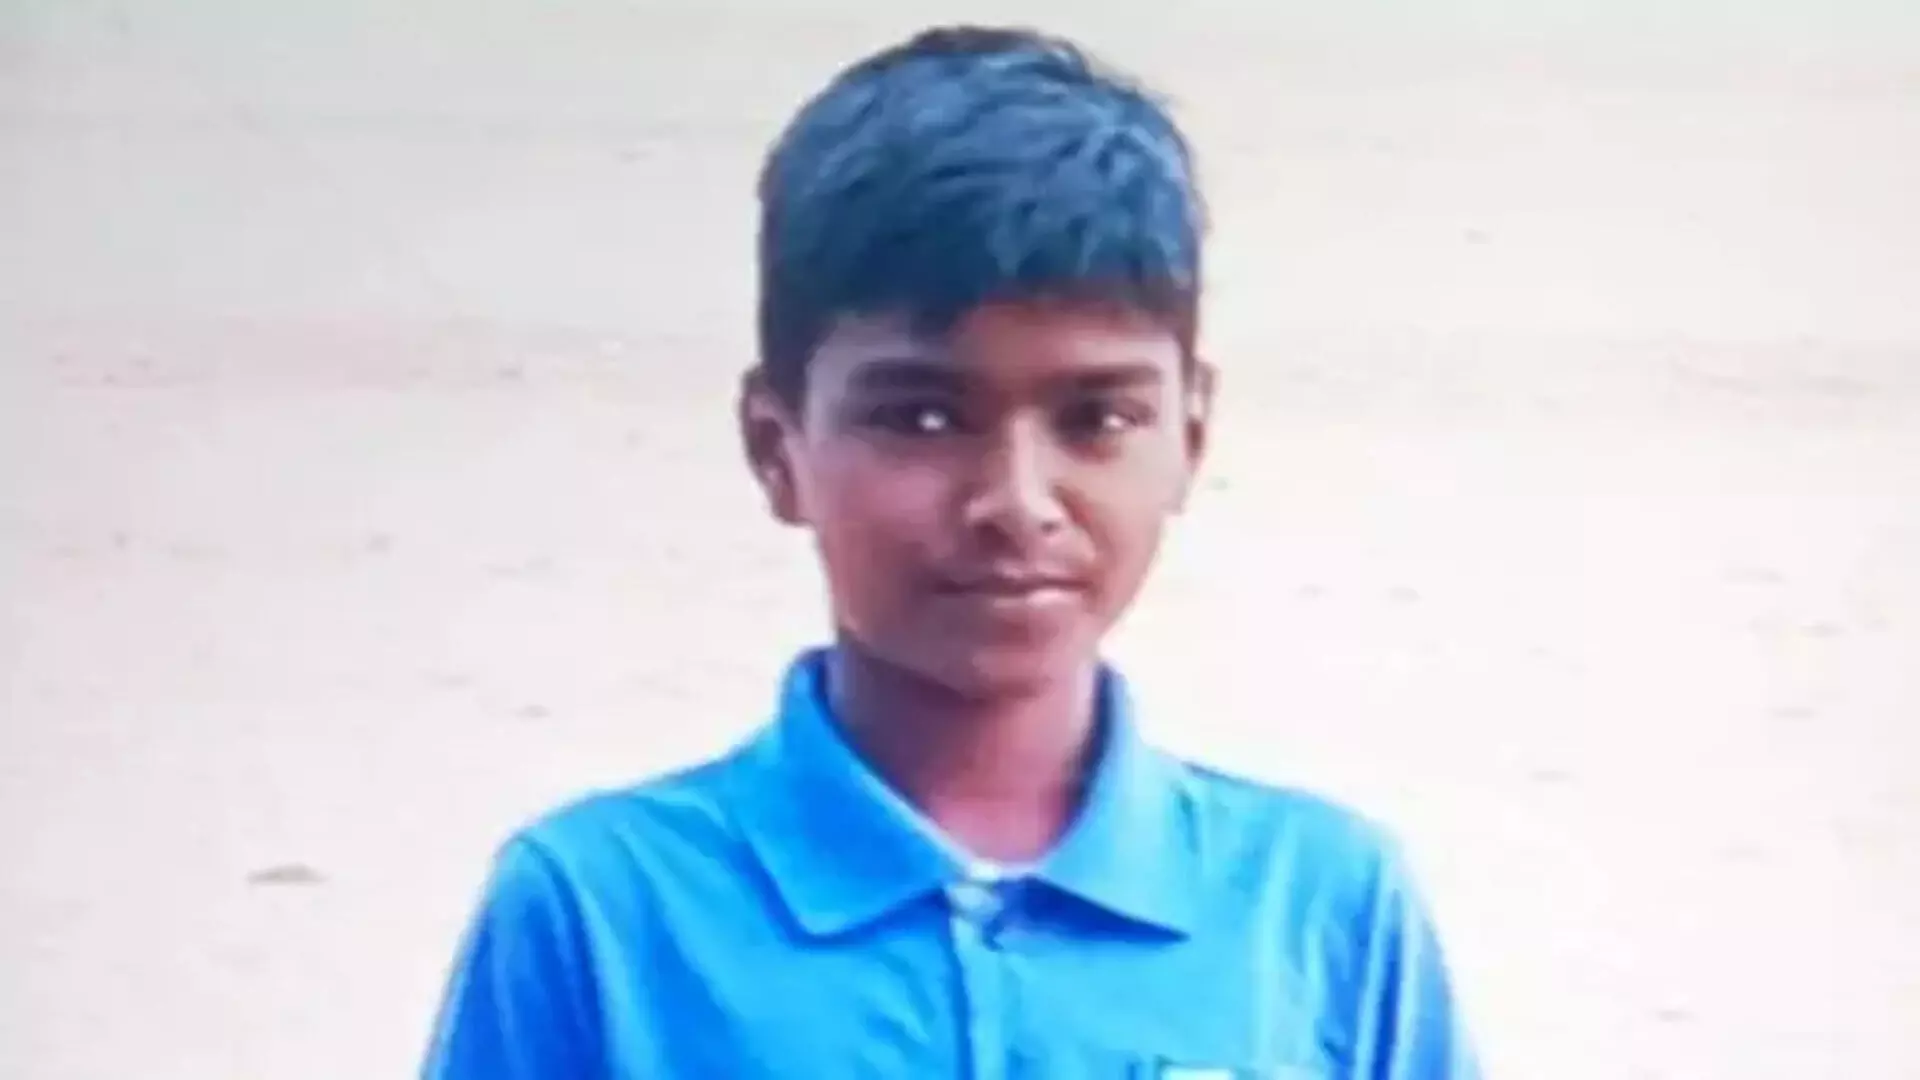 फ़ूड पॉइज़निंग से 13 वर्षीय छात्र की मौत, सदमे में परिजन